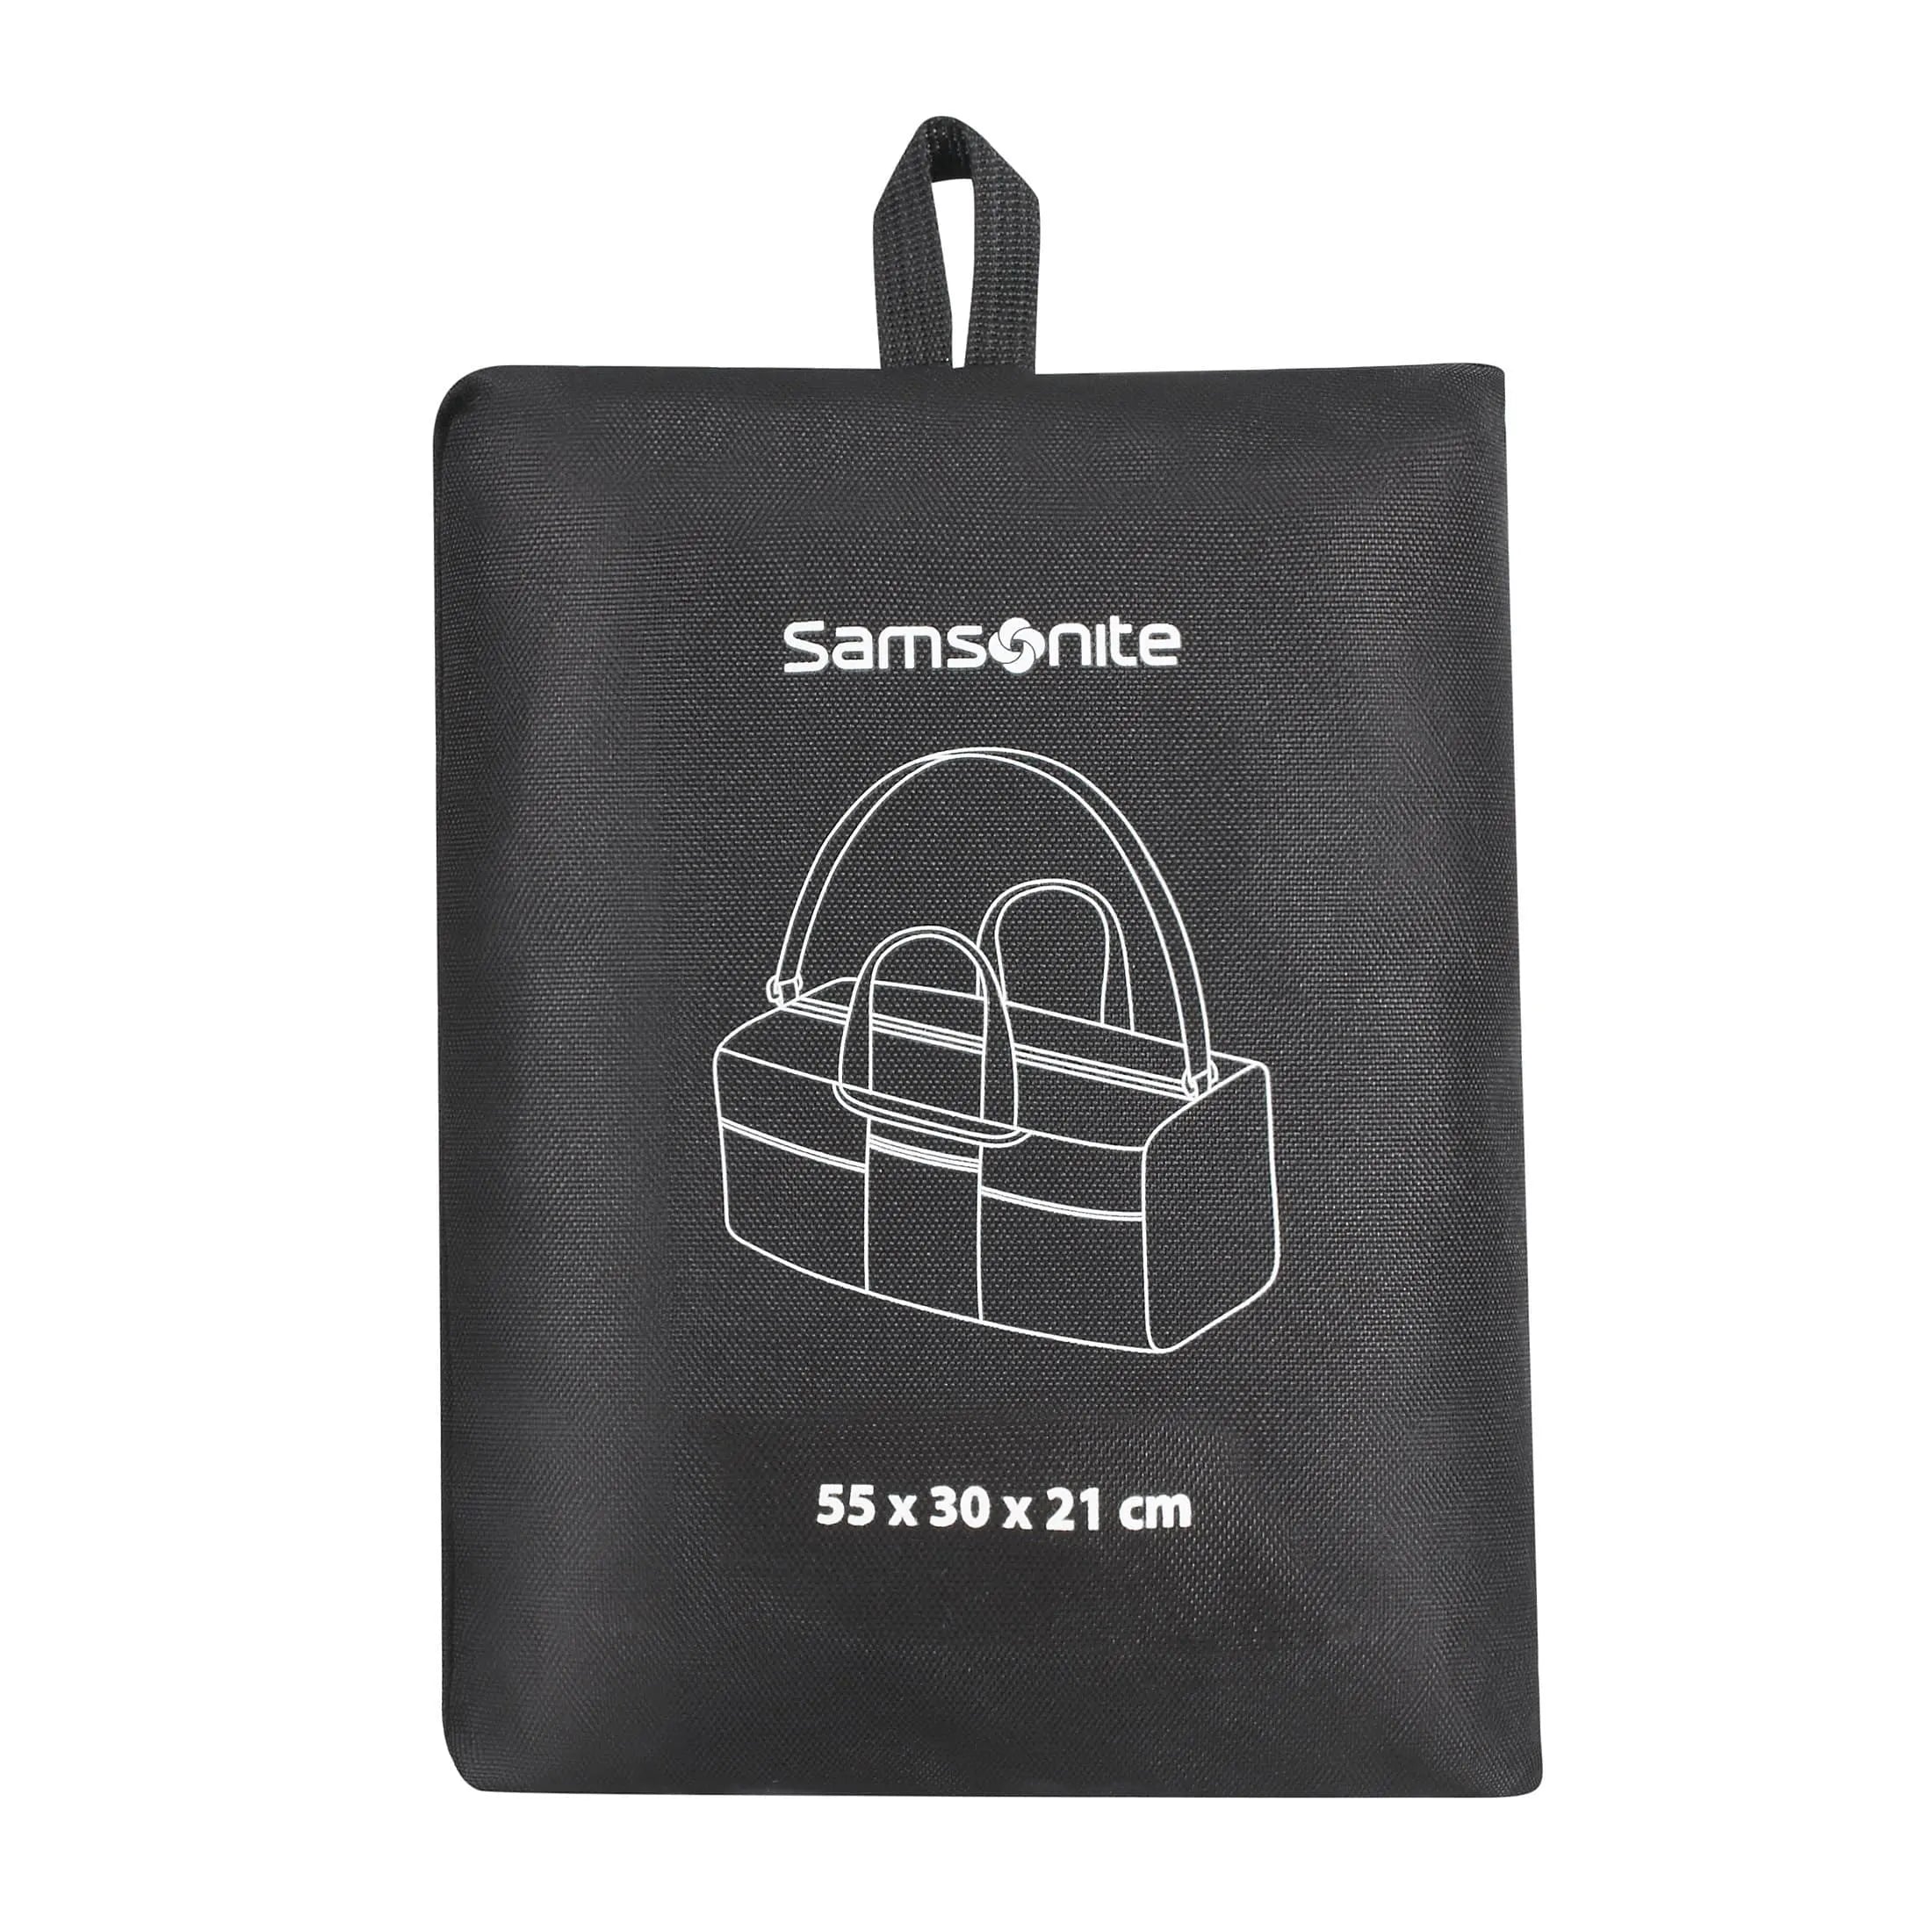 Samsonite Travel Accessories faltbare Reisetasche 55 cm - midnight blue